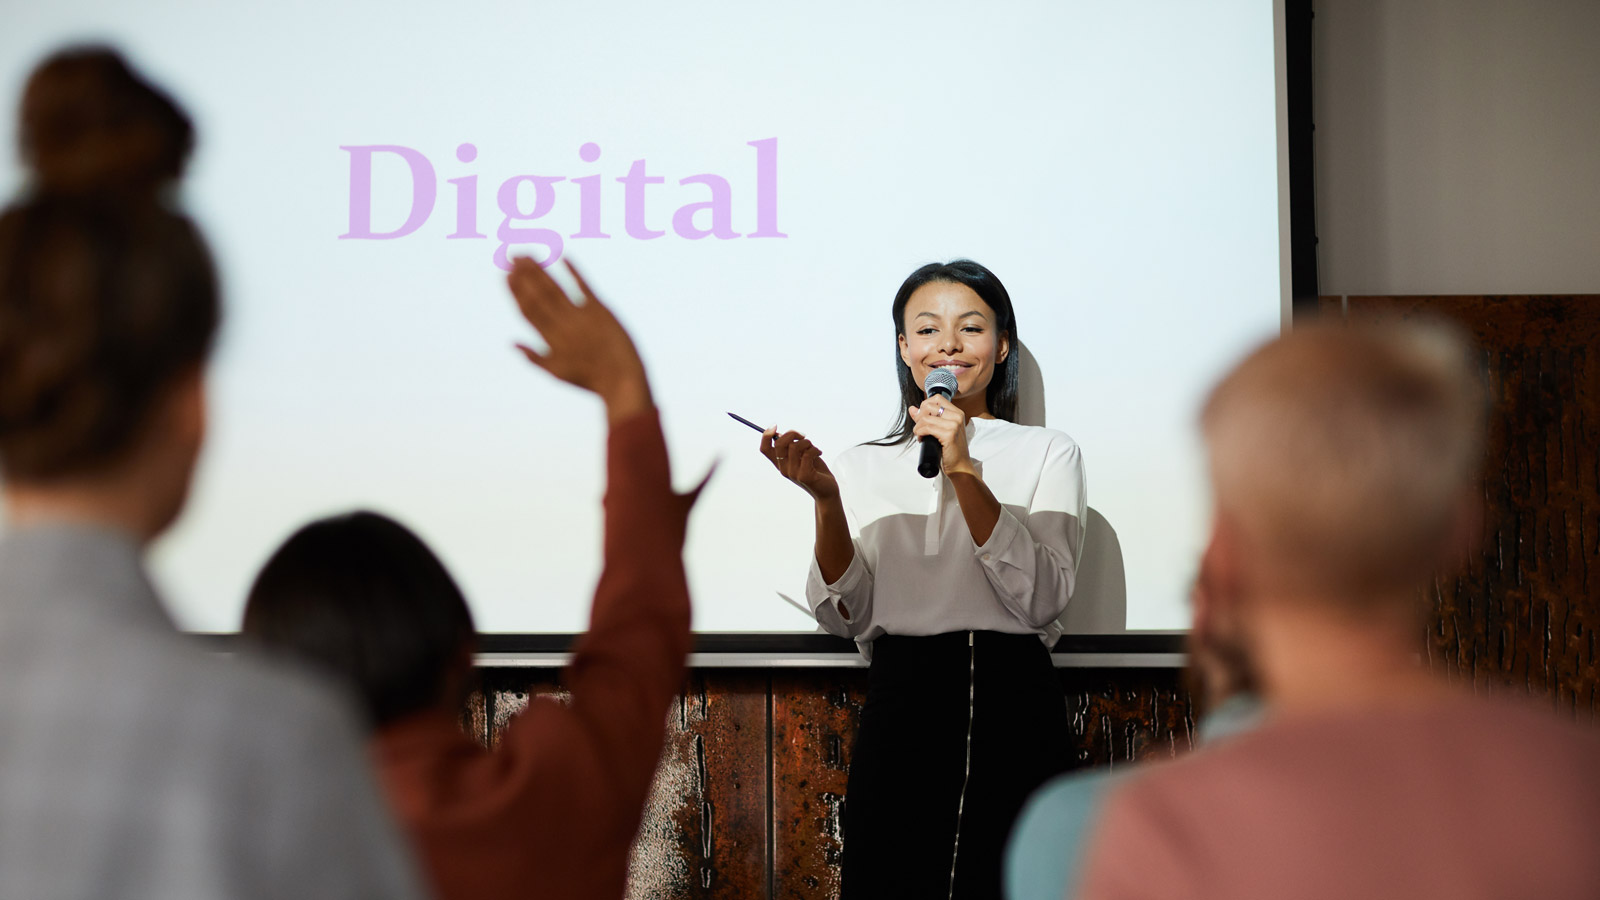 PERMISSION MARKETING kluczowy w strategiach marketingowych Seth Godin mediarun digital marketing prezentacja 2019